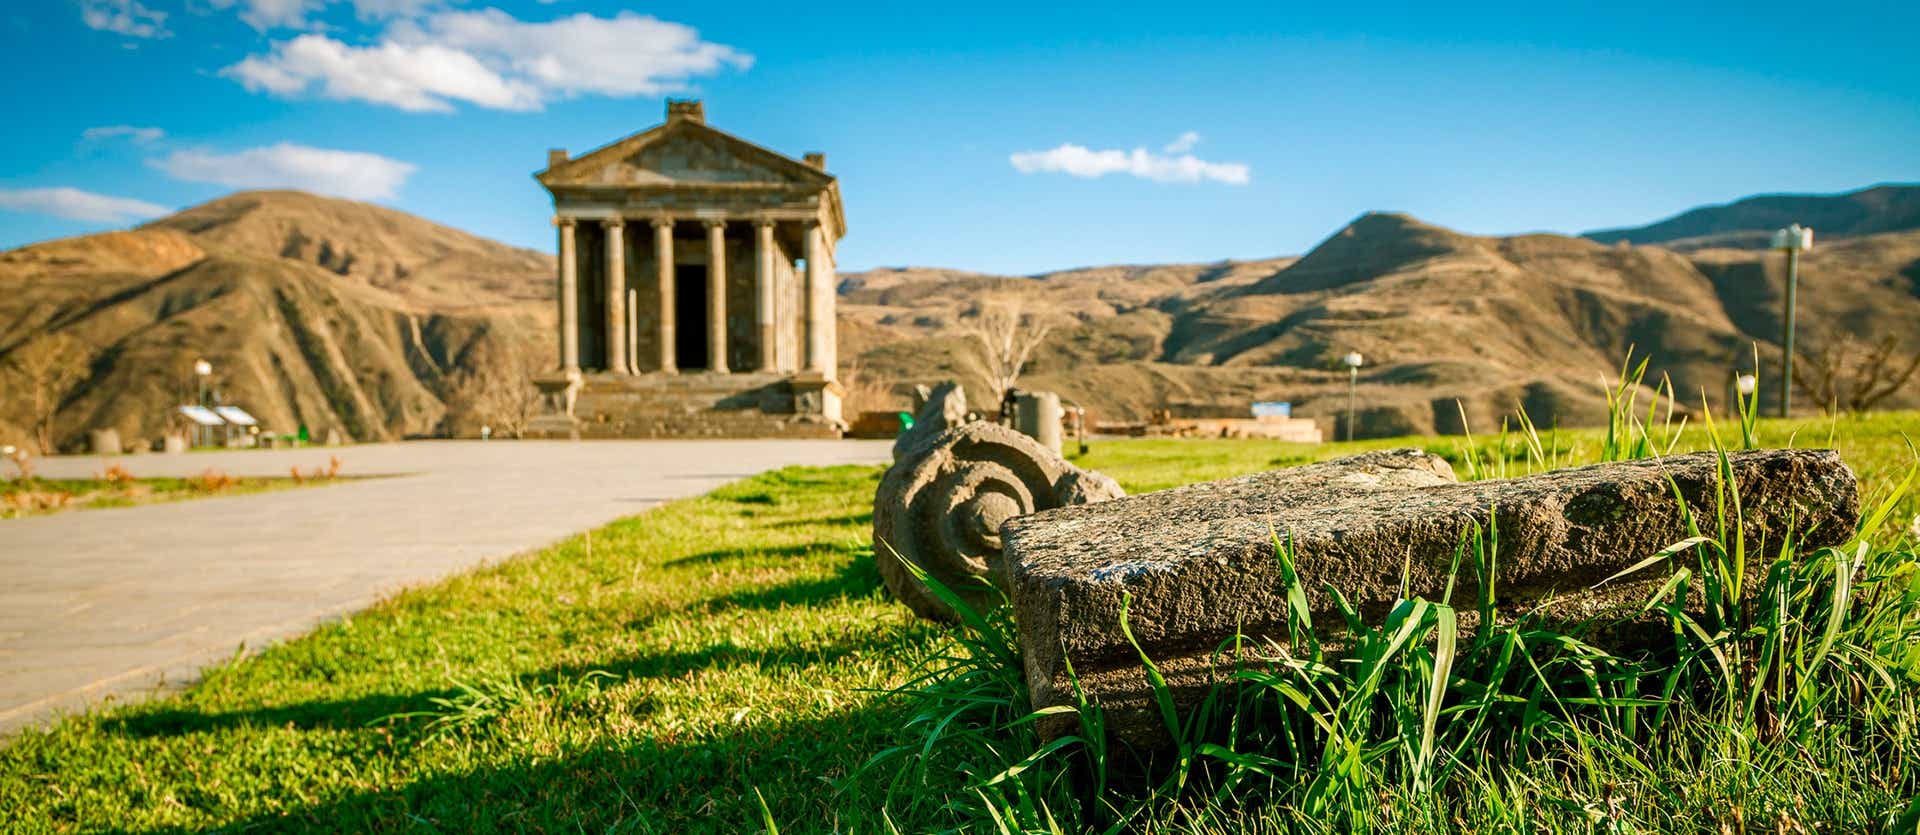 Templo de Garni <span class="iconos separador"></span> Armenia